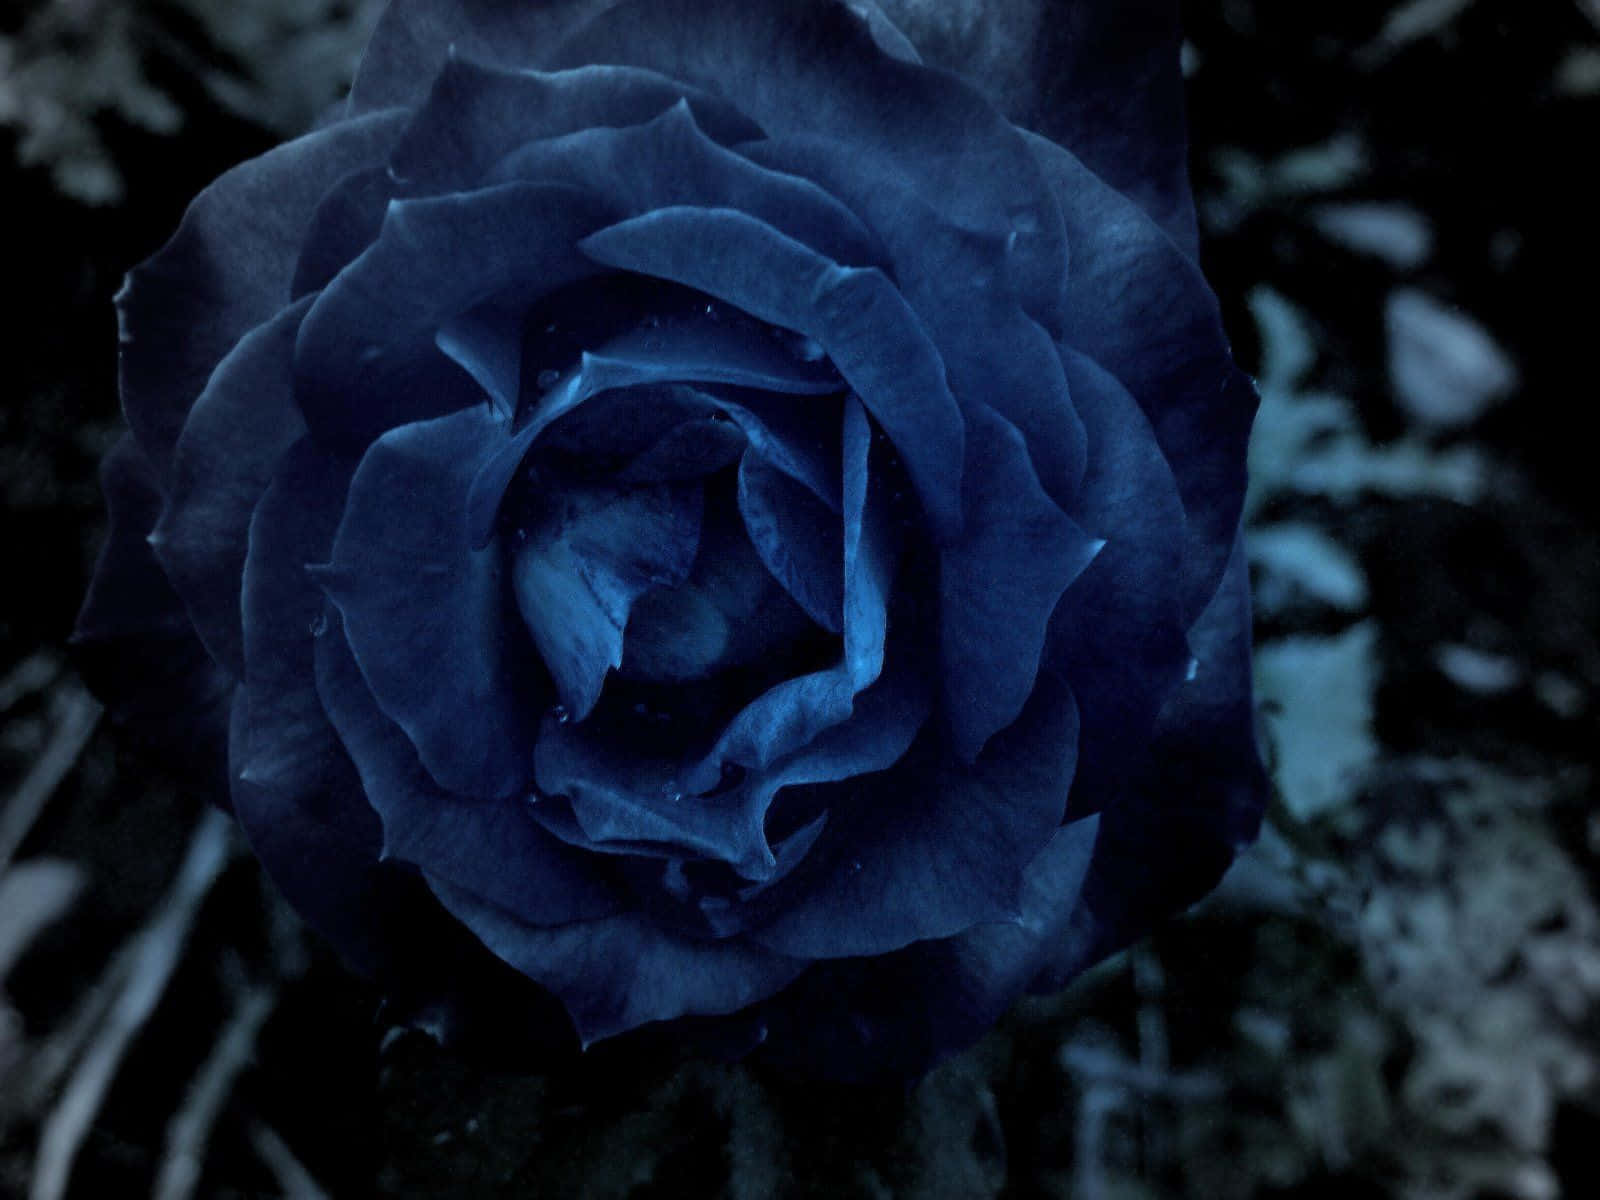 Dark Blue Rose Abstract Wallpaper